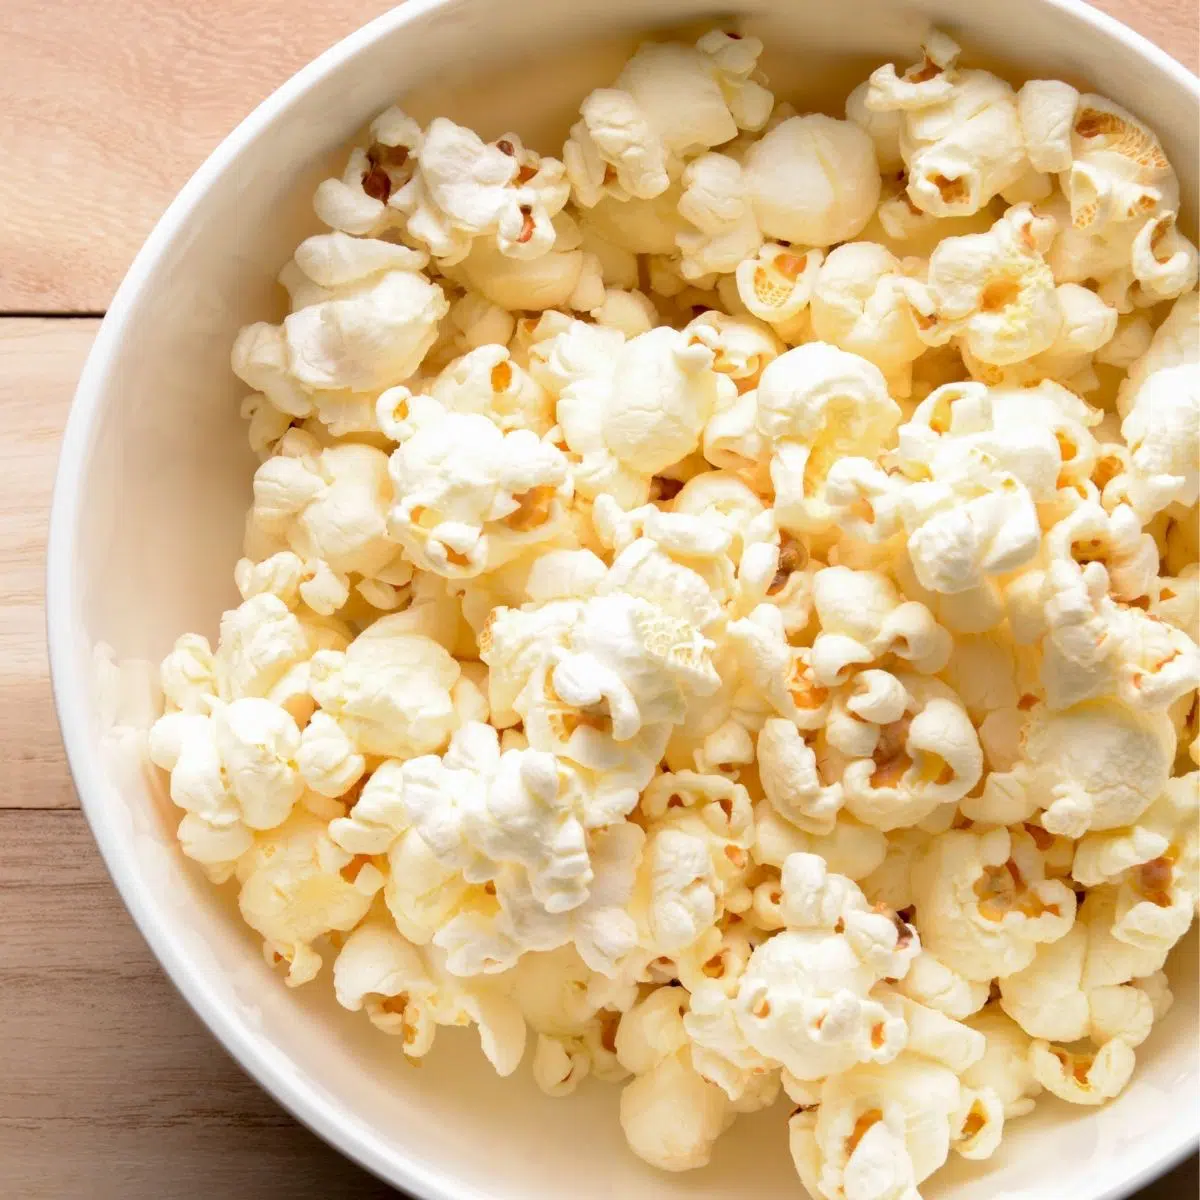 Enkla popcorn med spishäll dyker upp lätta och fluffiga som denna läckra skål!